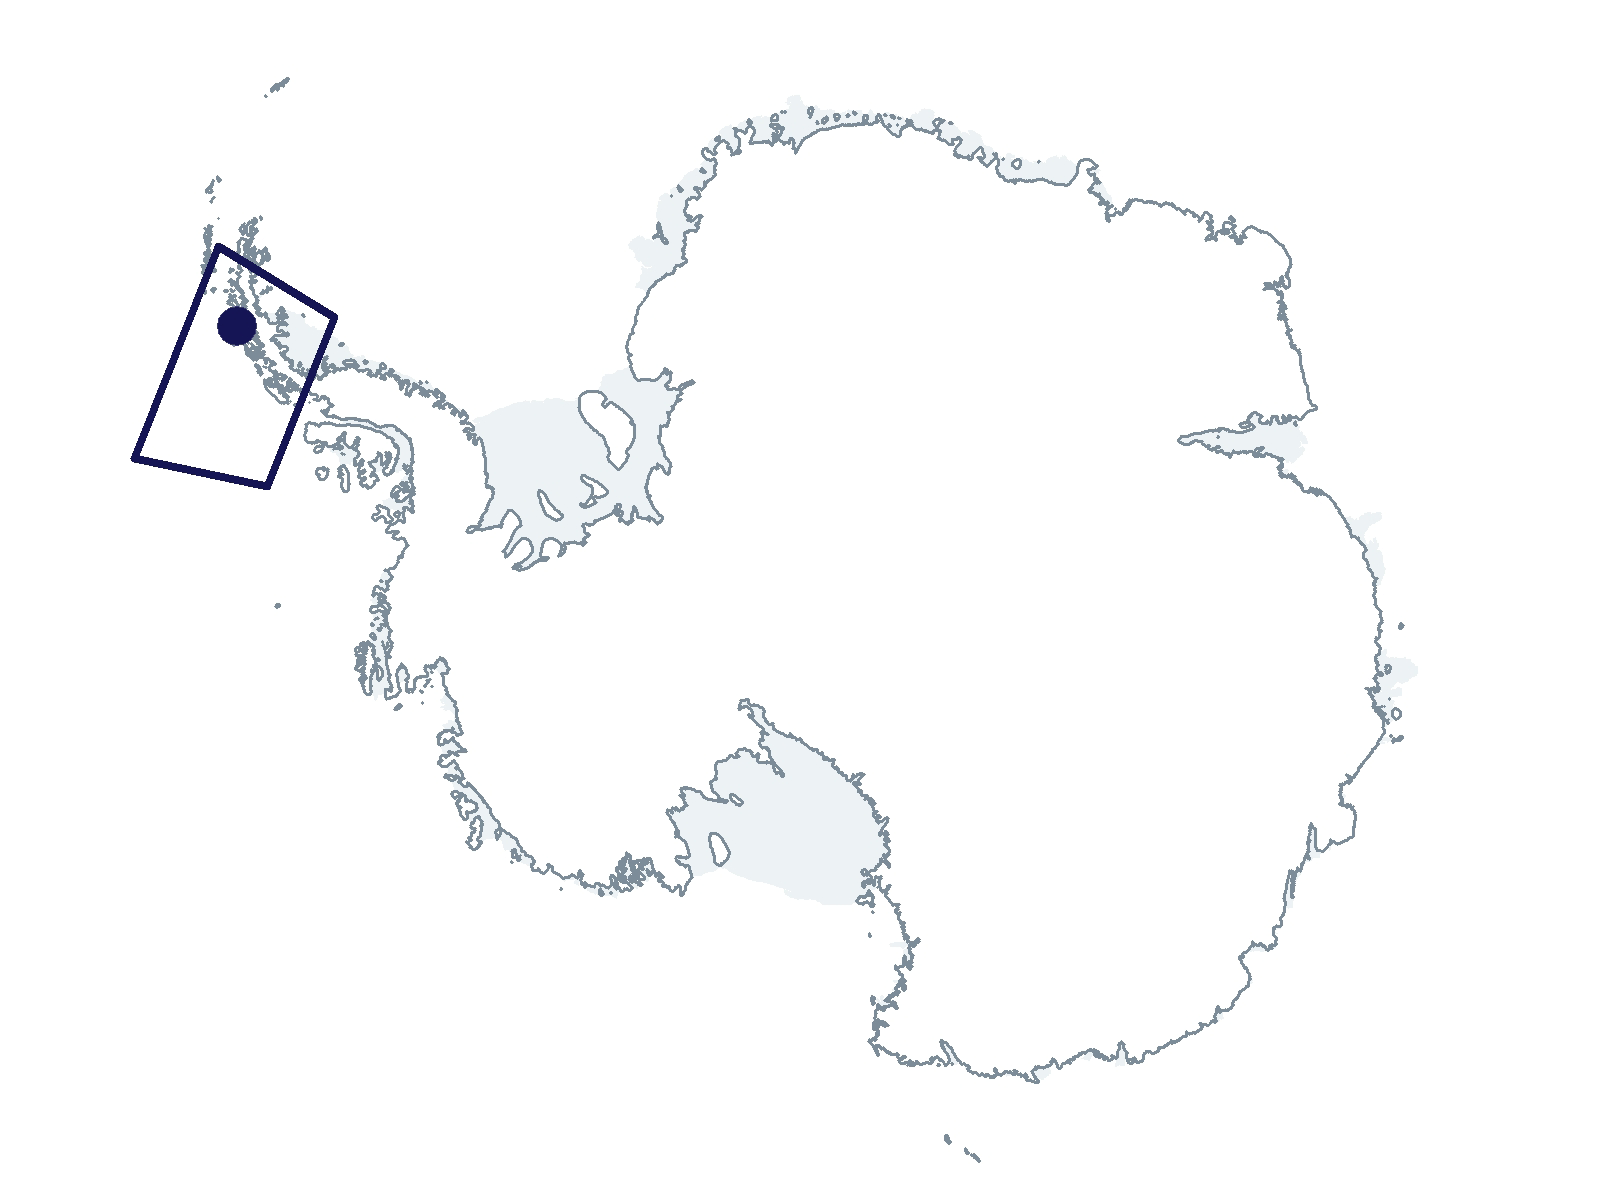 C-045-L/P Research Location(s): West Antarctic Peninsula